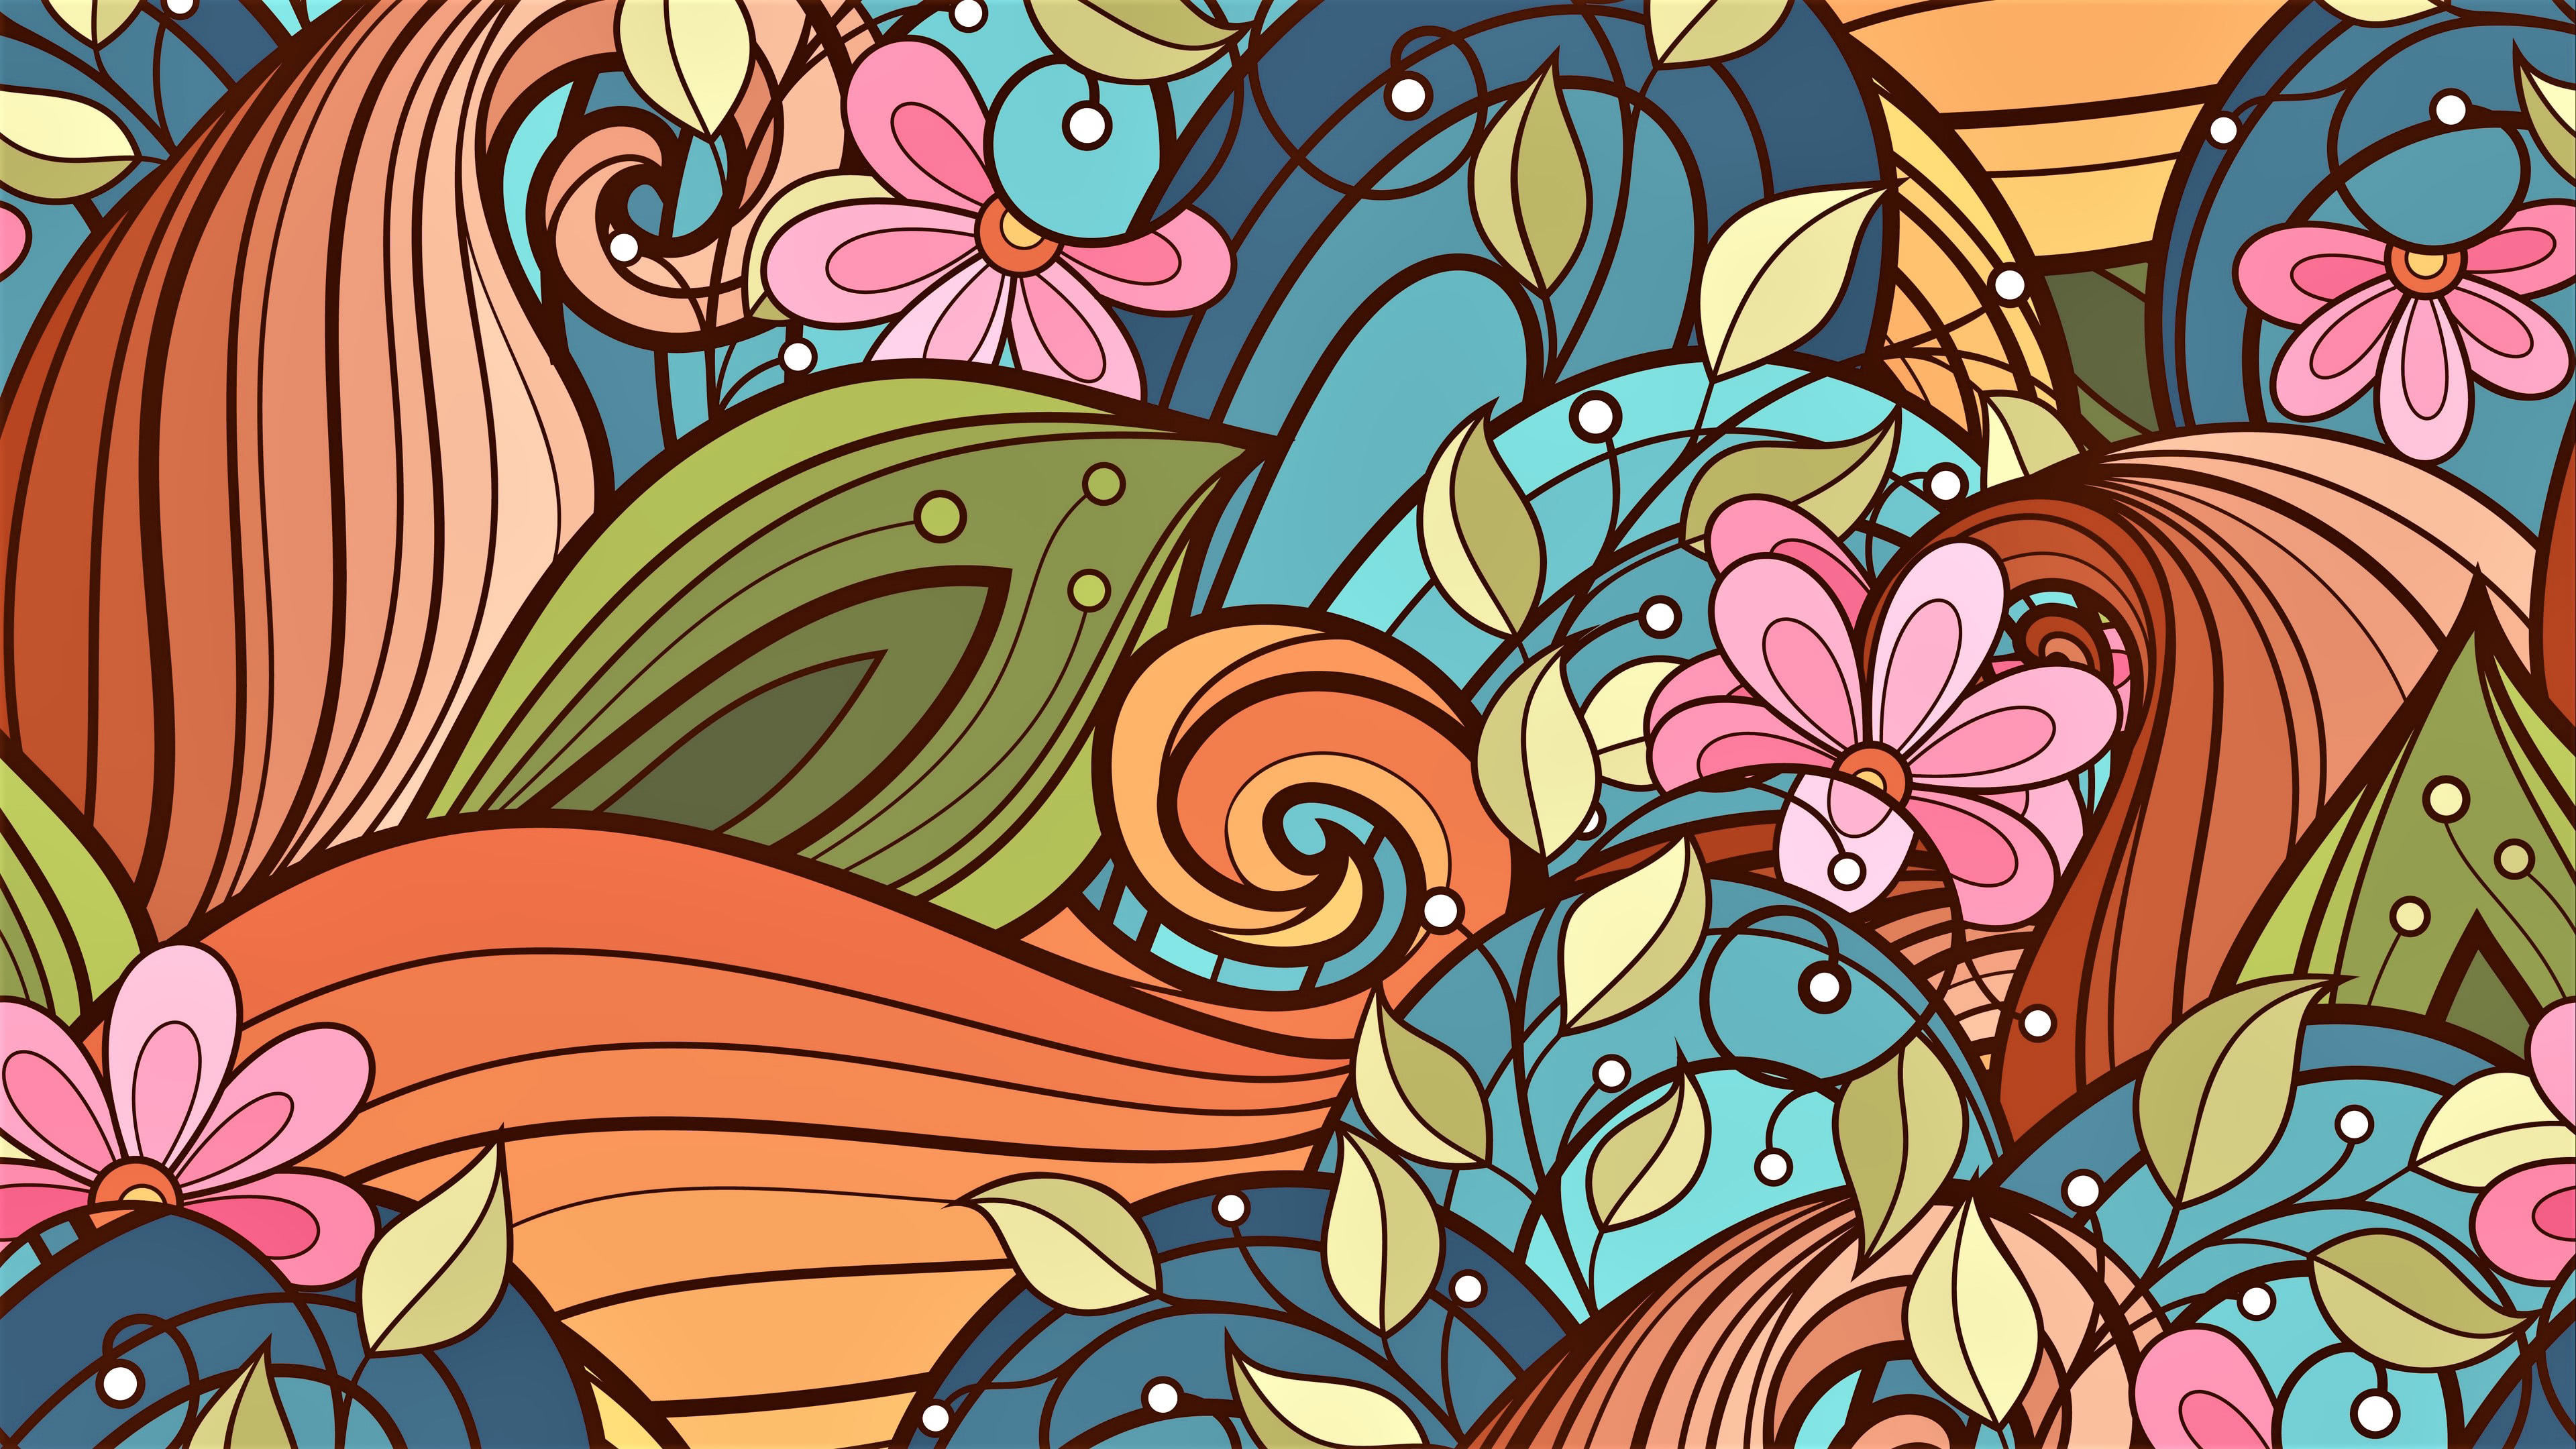 Floral Art Pattern Two UHD 4K Wallpaper | Pixelz